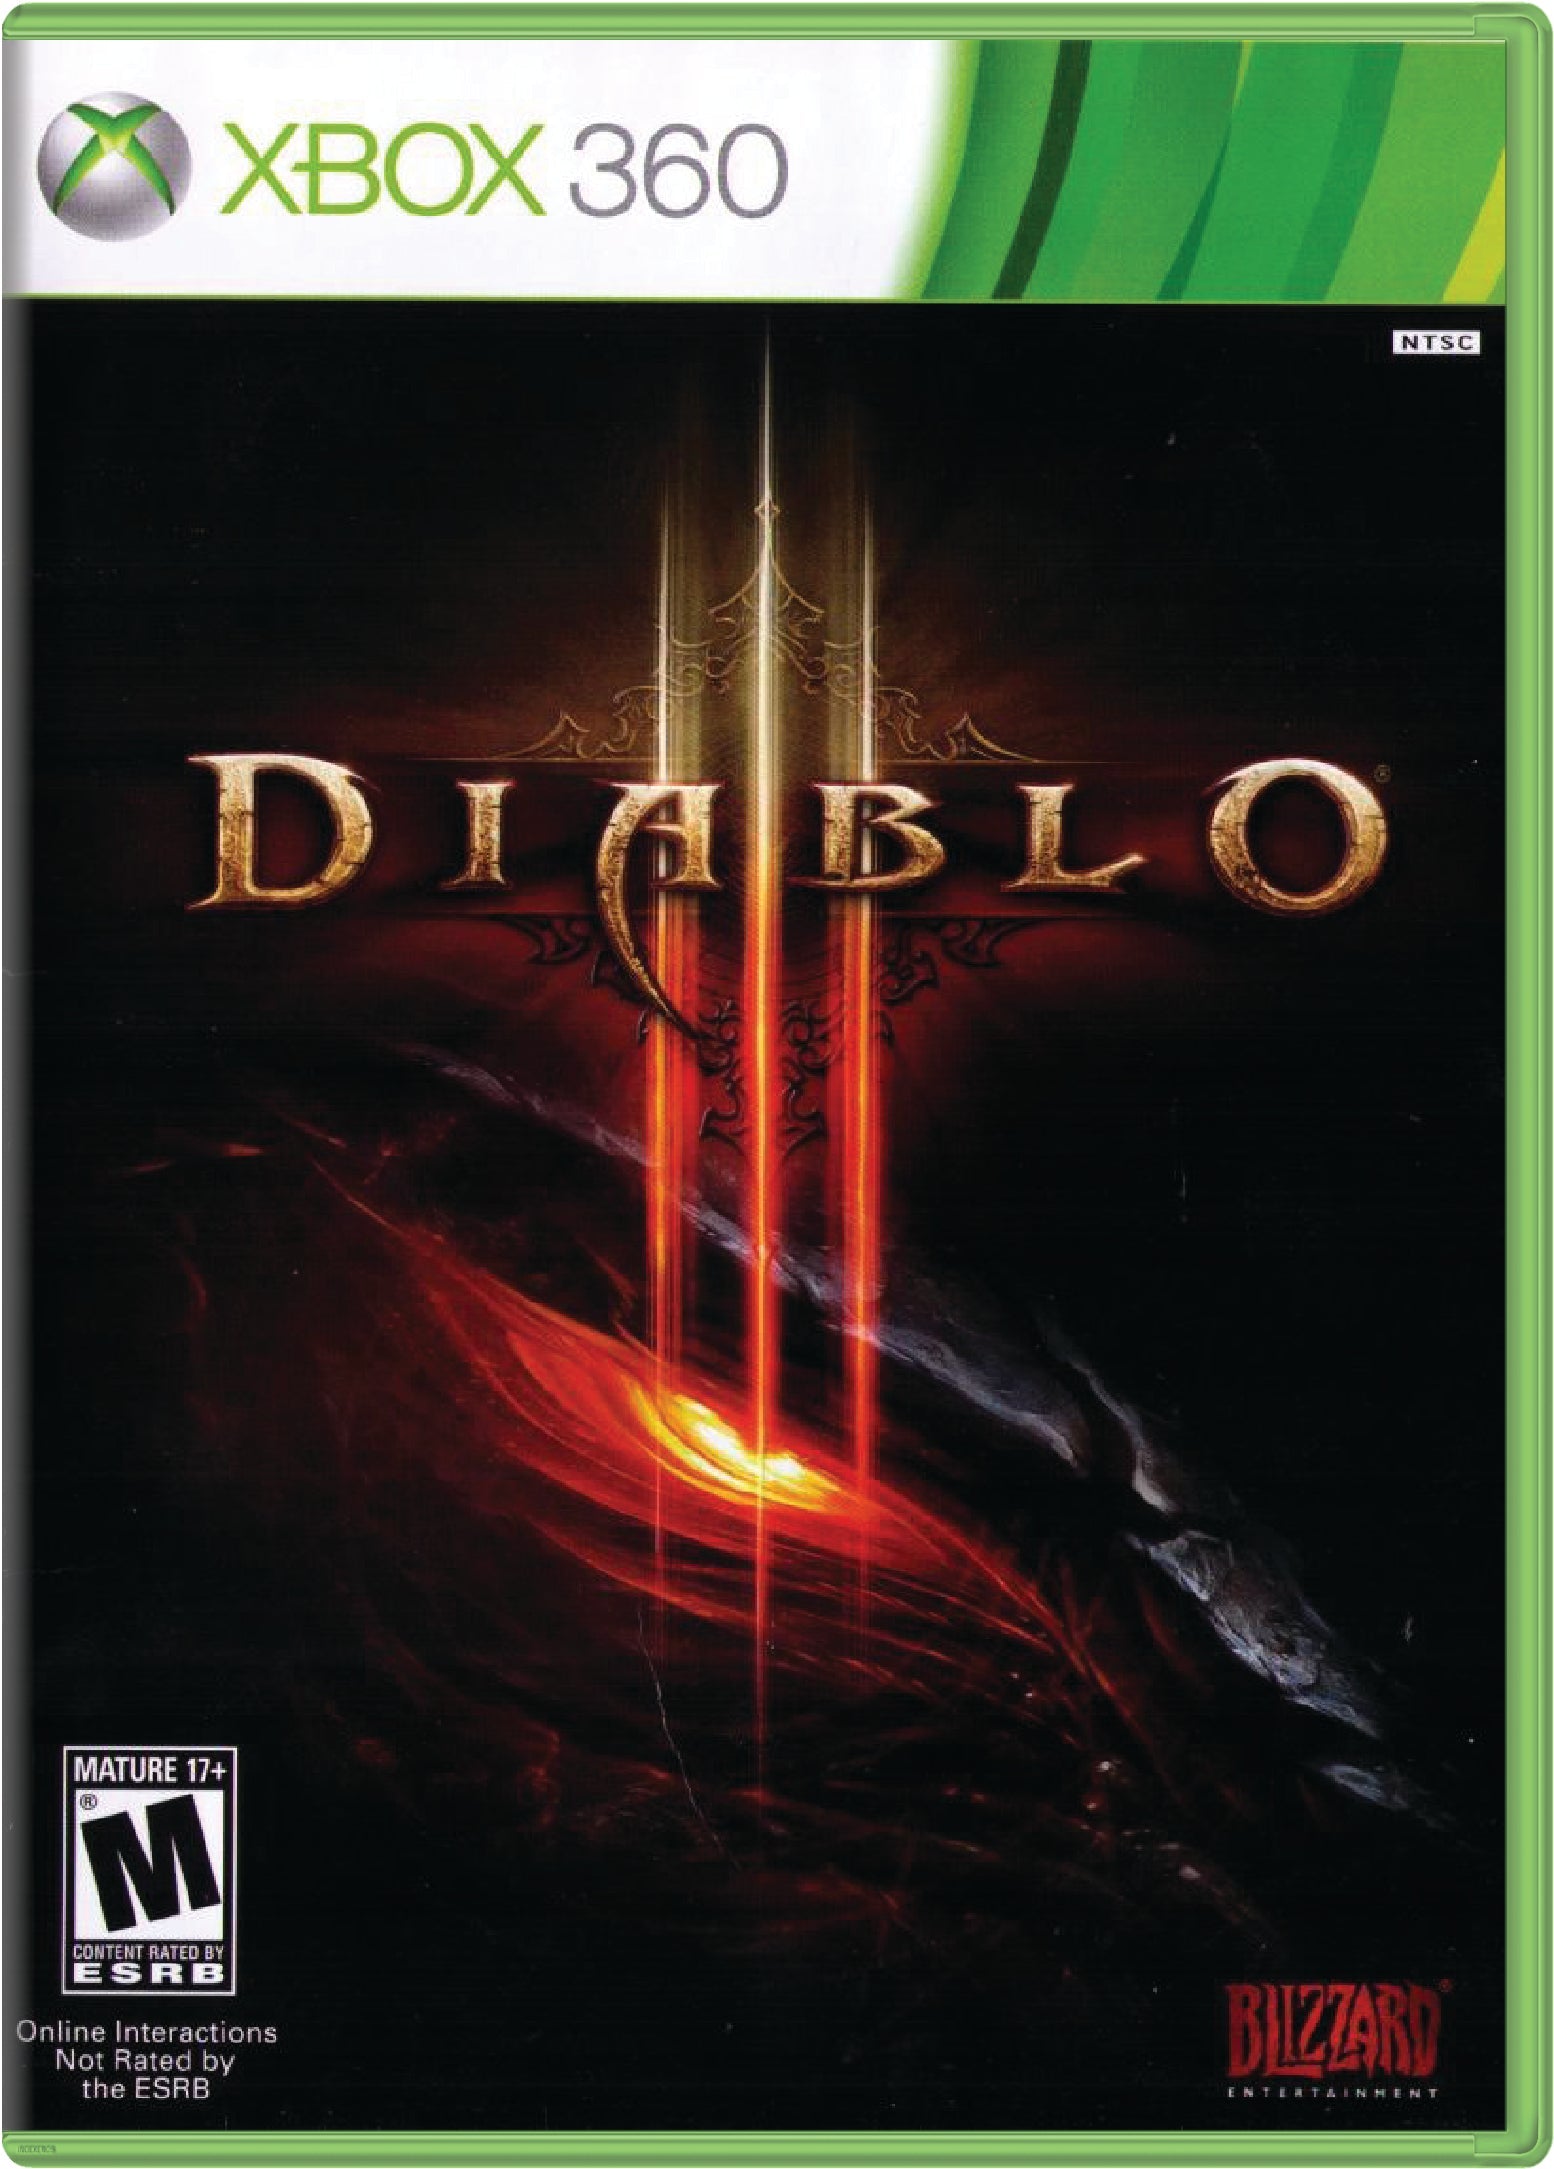 Diablo III Cover Art